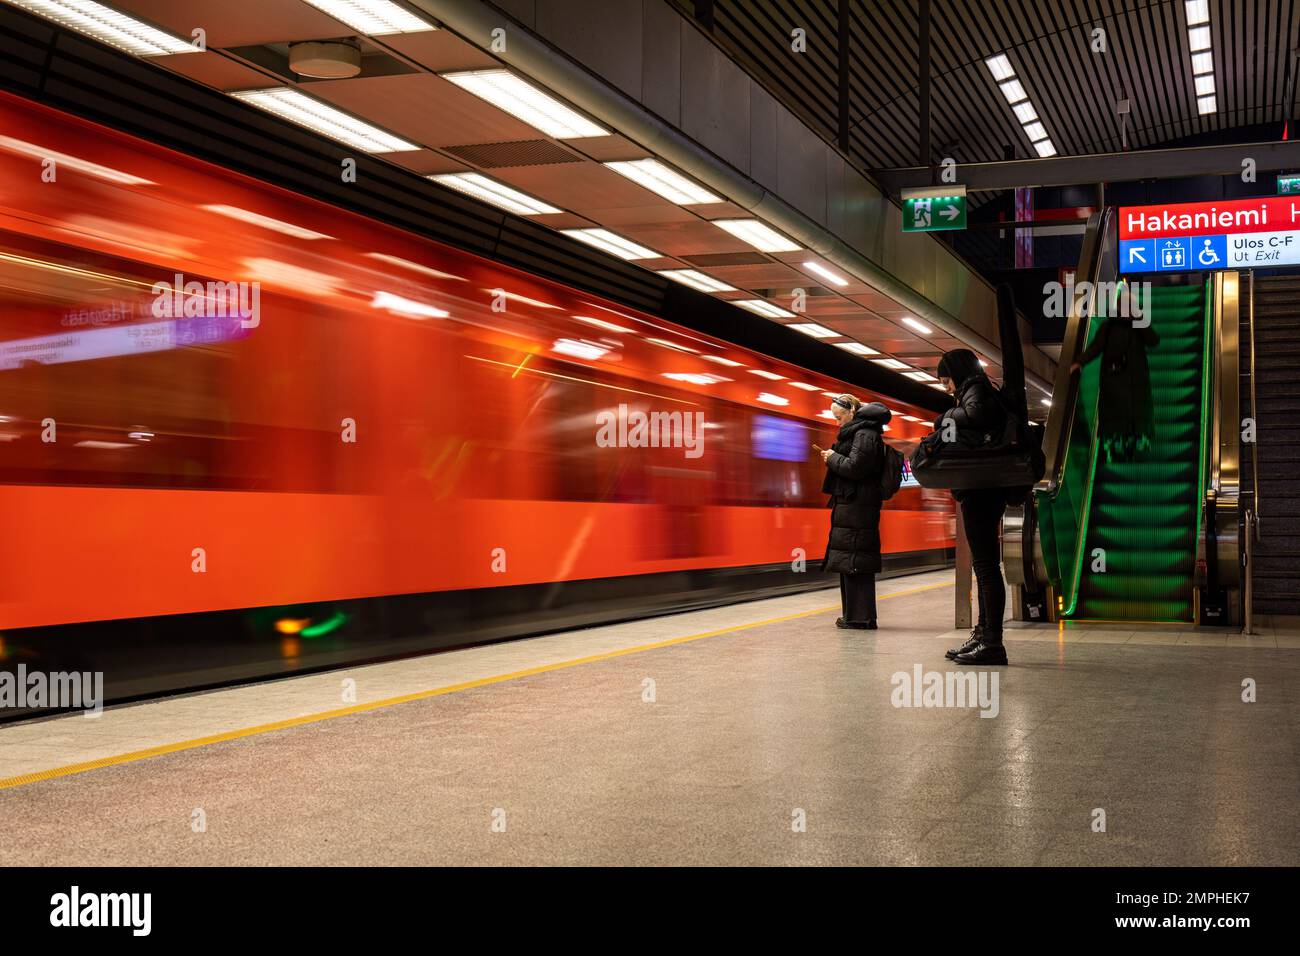 Unscharfe Bewegung in einer orangefarbenen U-Bahn in der U-Bahn-Station Hakaniemi in Helsinki, Finnland Stockfoto